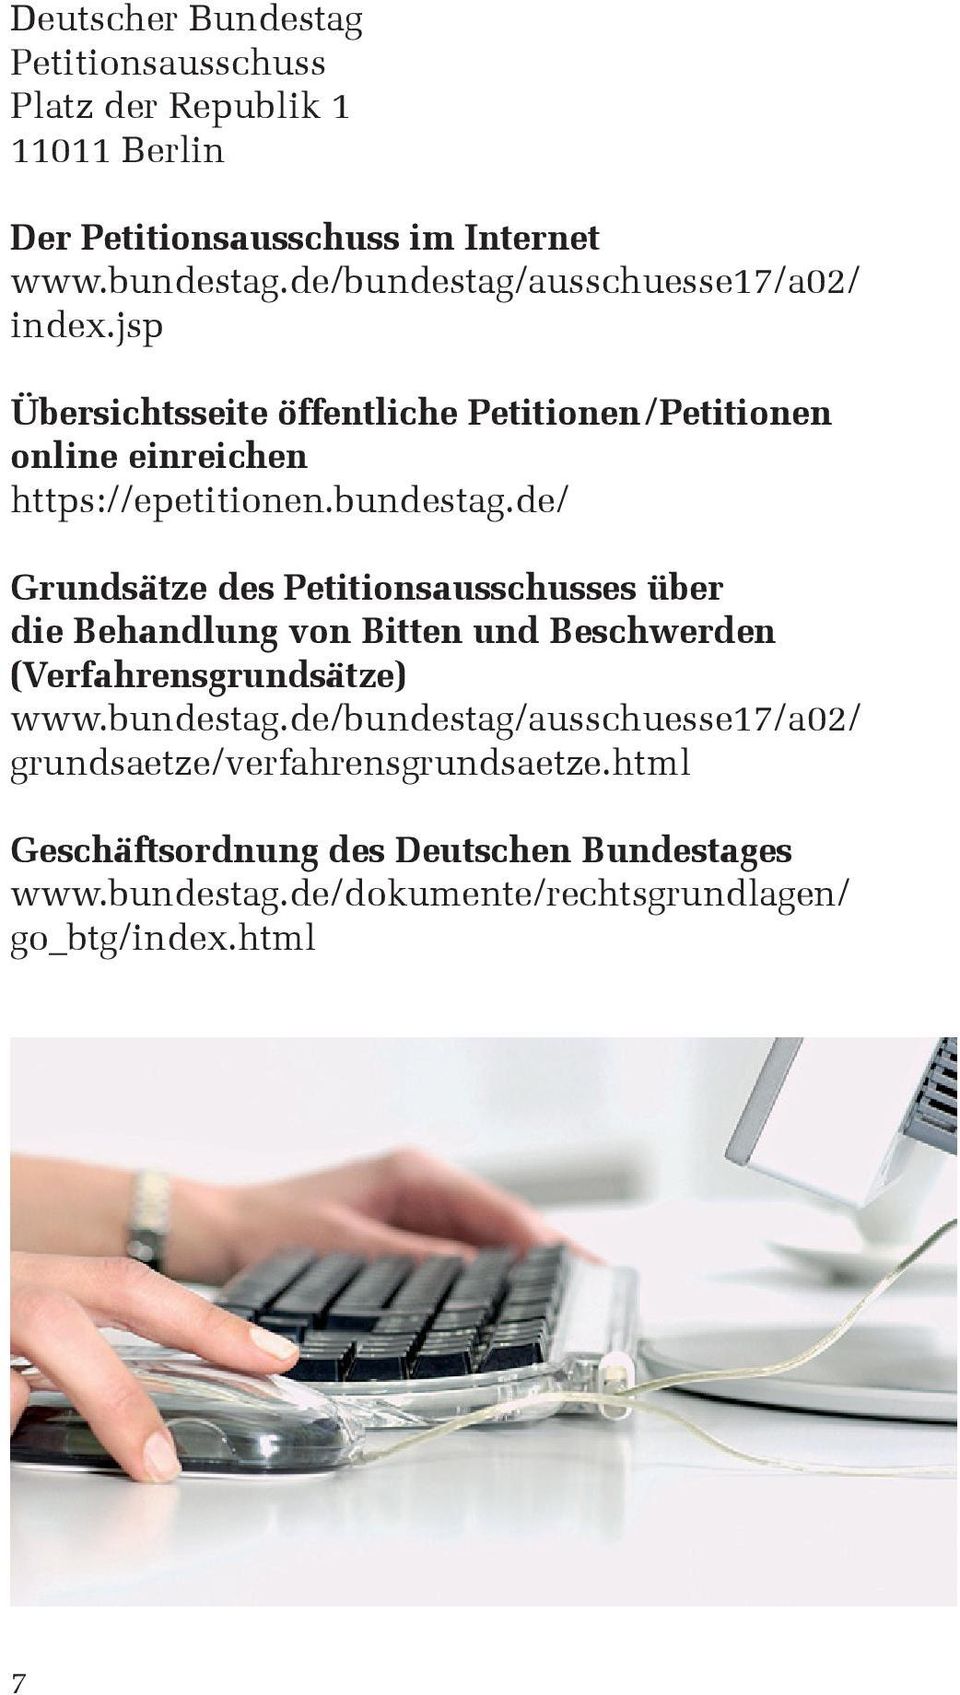 bundestag.de/bundestag/ausschuesse17/a02/ grundsaetze/verfahrensgrundsaetze.html Geschäftsordnung des Deutschen Bundestages www.bundestag.de/dokumente/rechtsgrundlagen/ go_btg/index.